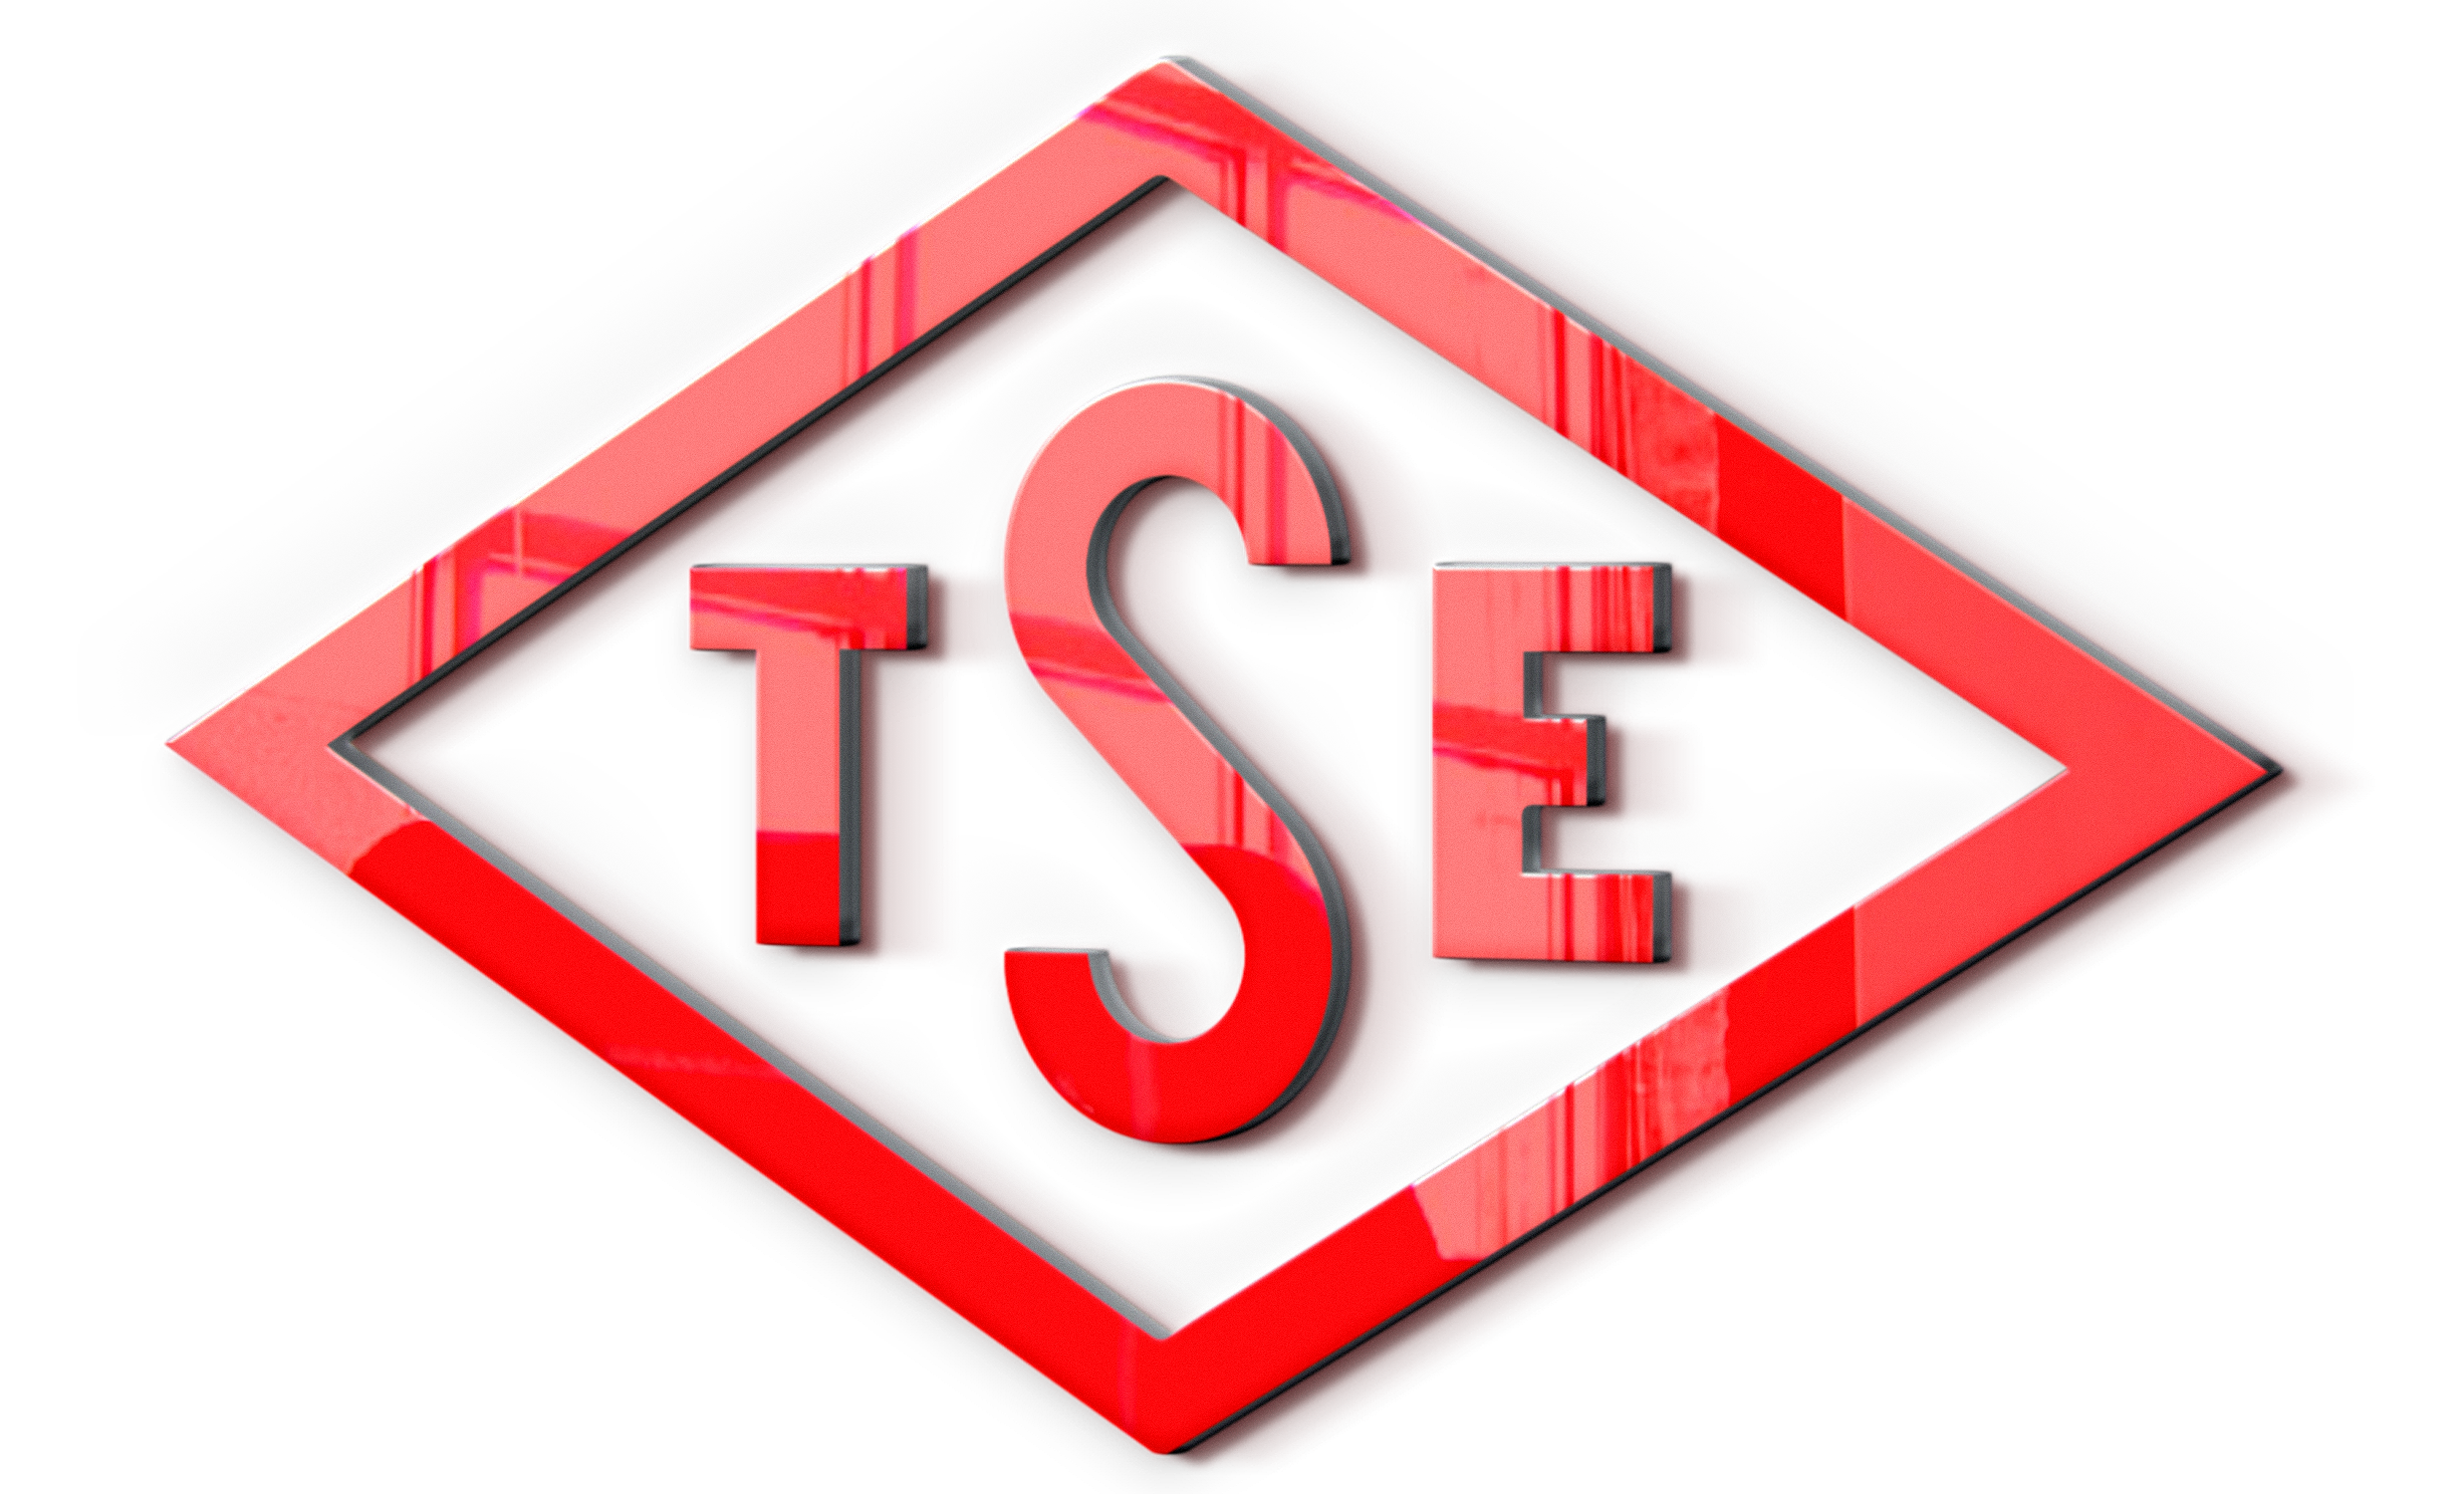 TSE Bursa Bölge Koordinatörlüğü’nün “Bilgilendirme ve Değerlendirme Toplantısı” konulu yazısı...